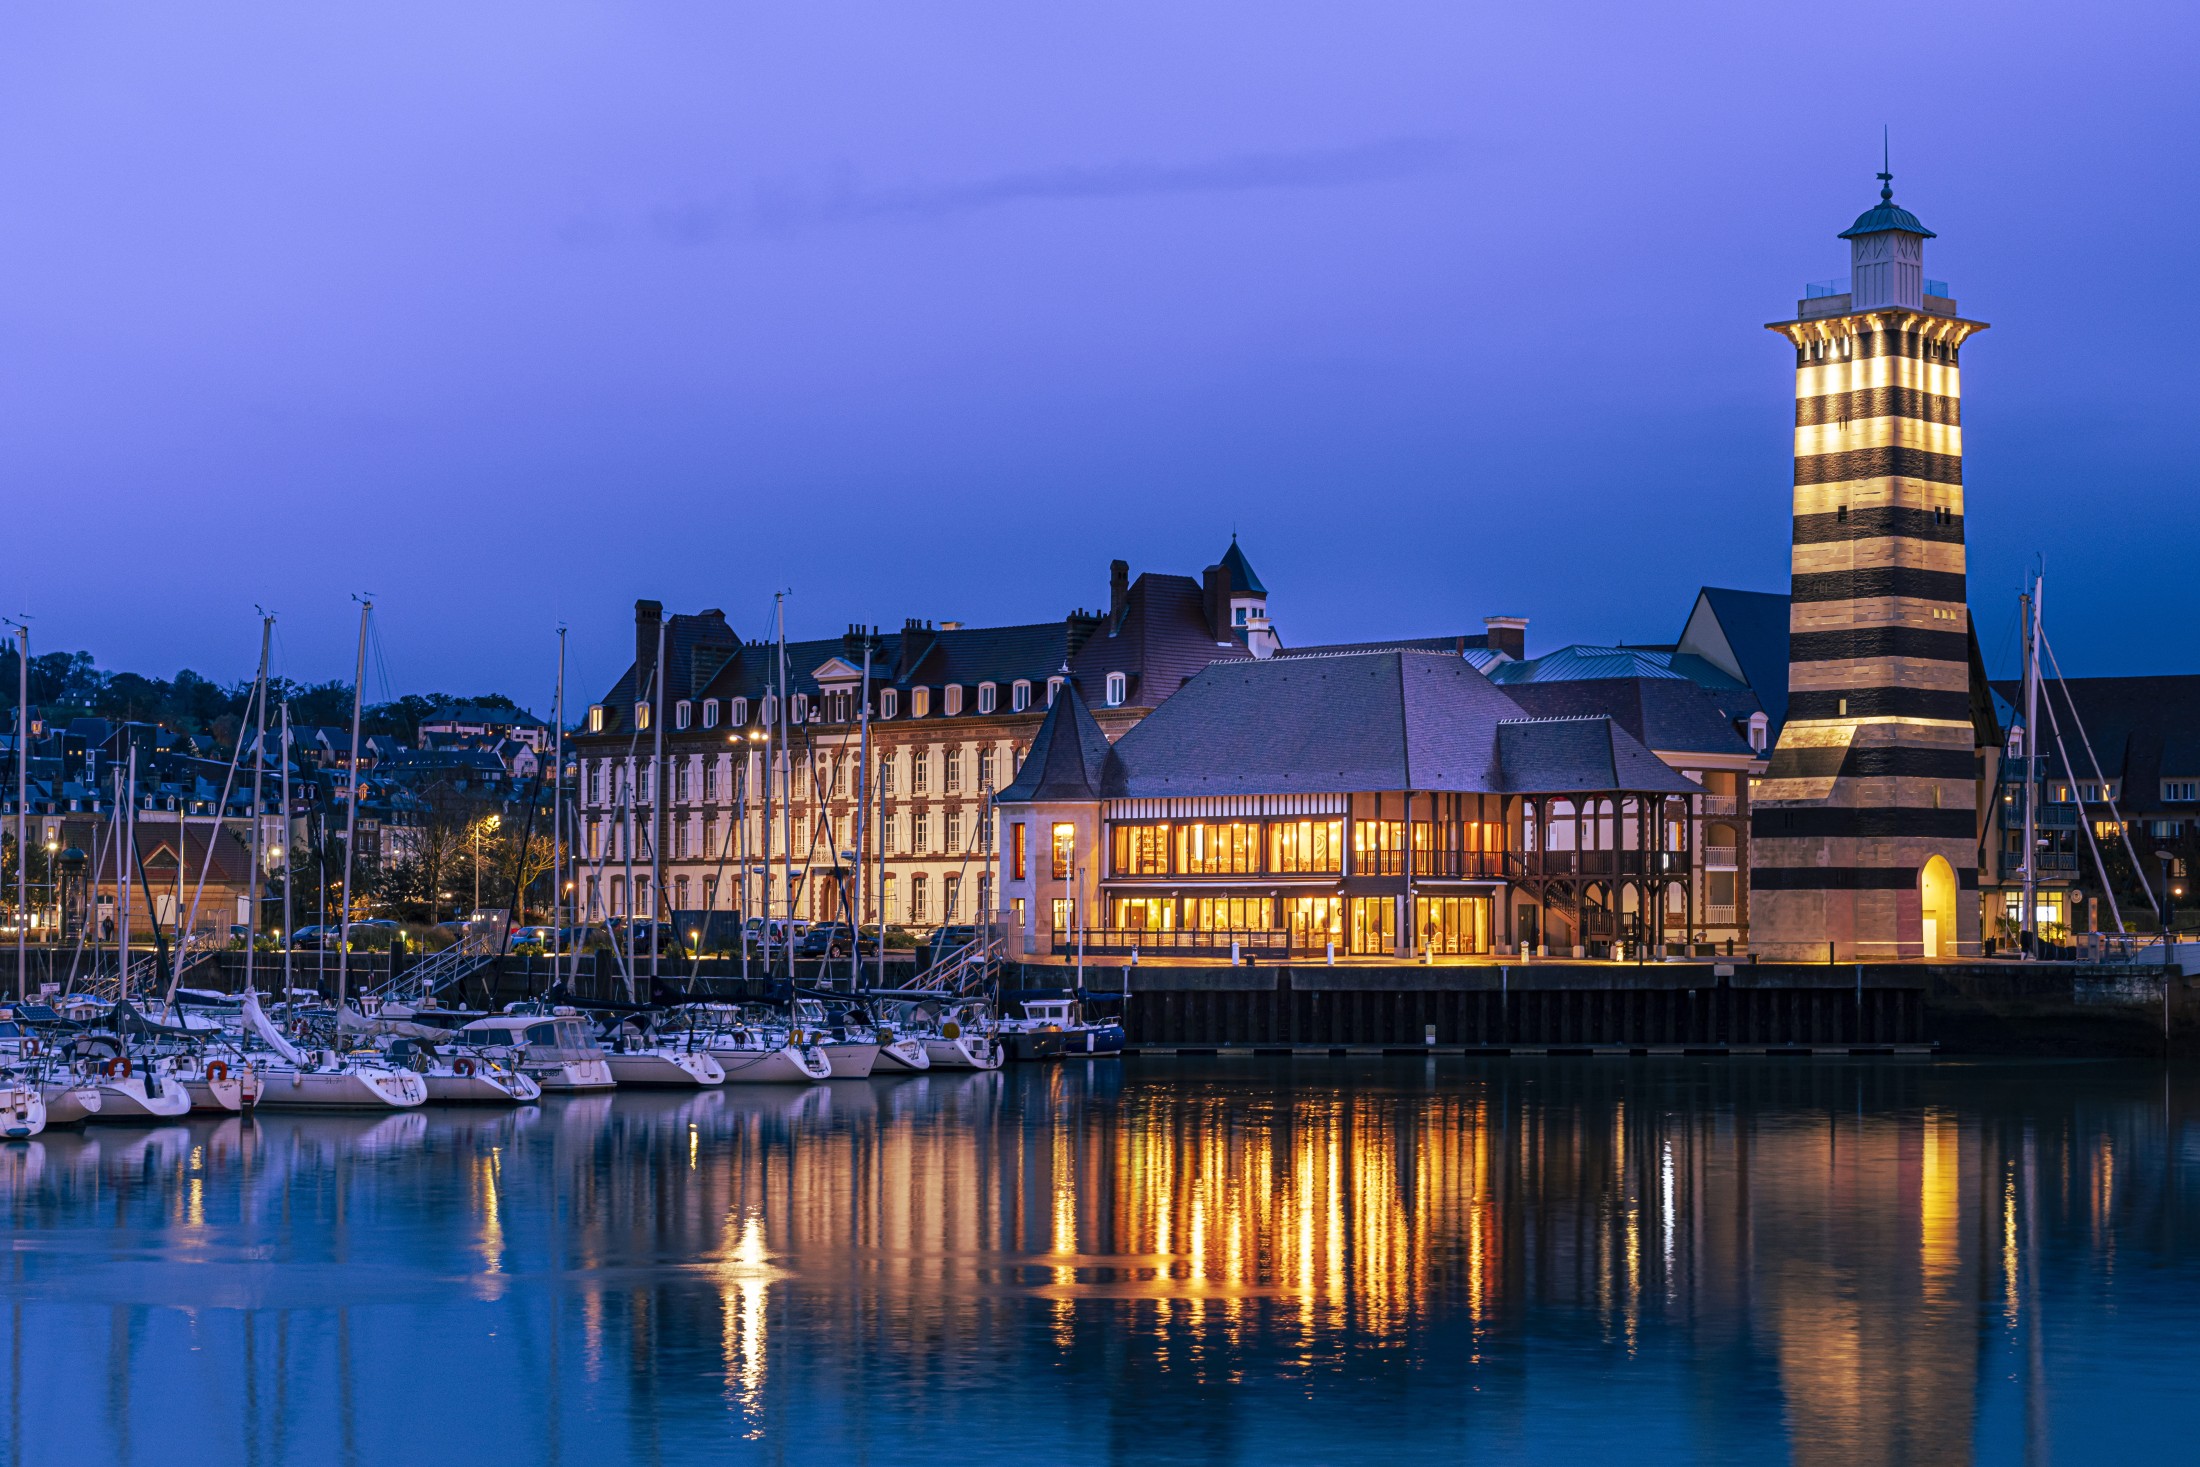 Vue nocturne du Meilleur restaurant Deauville trouville, le nouveau restaurant Costes Deauville, avec terrasse illuminée sur le port de plaisance.